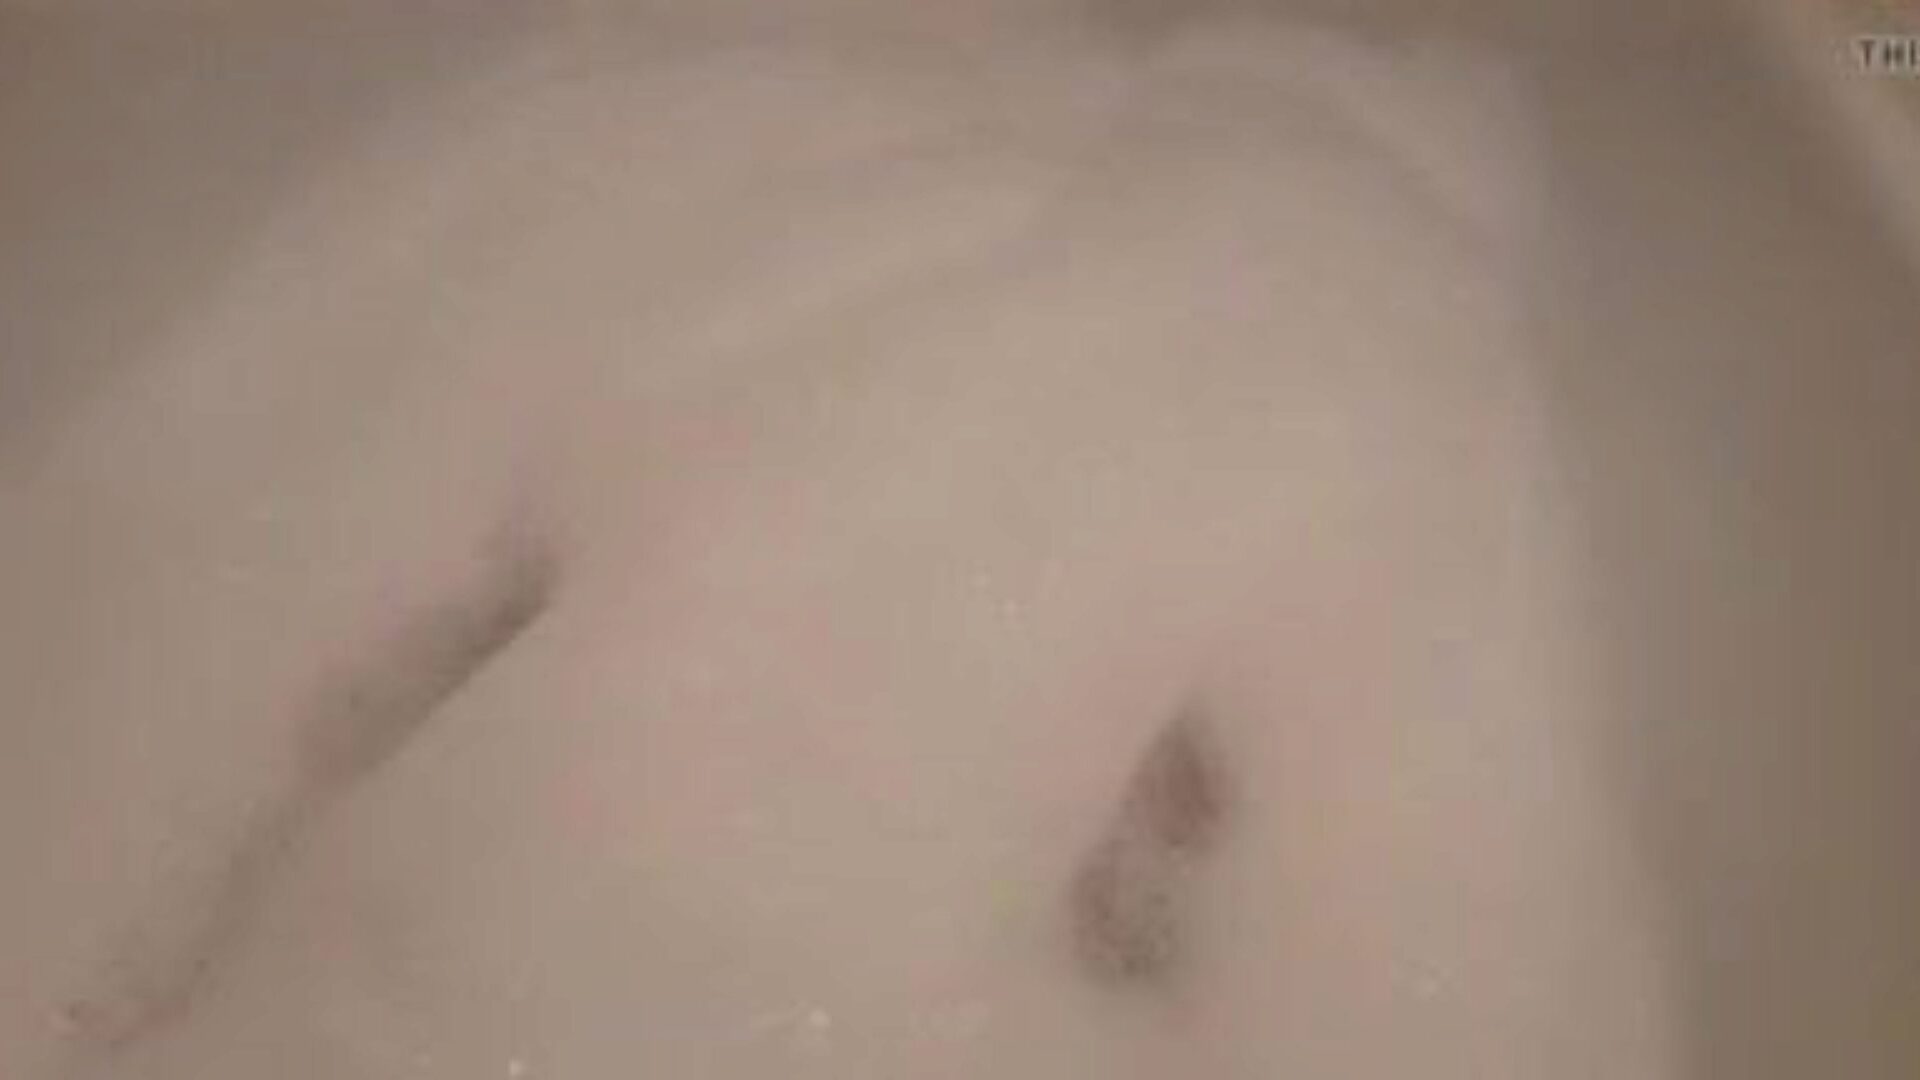 linda bath2: video porno gratis cu păsărică strânsă 10 - xhamster urmărește video linda bath2 tube fuckfest gratuit pentru xhamster, cu cea mai sexy colecție de vinete video porno porno strânse, cu apă și șaizeci și nouă